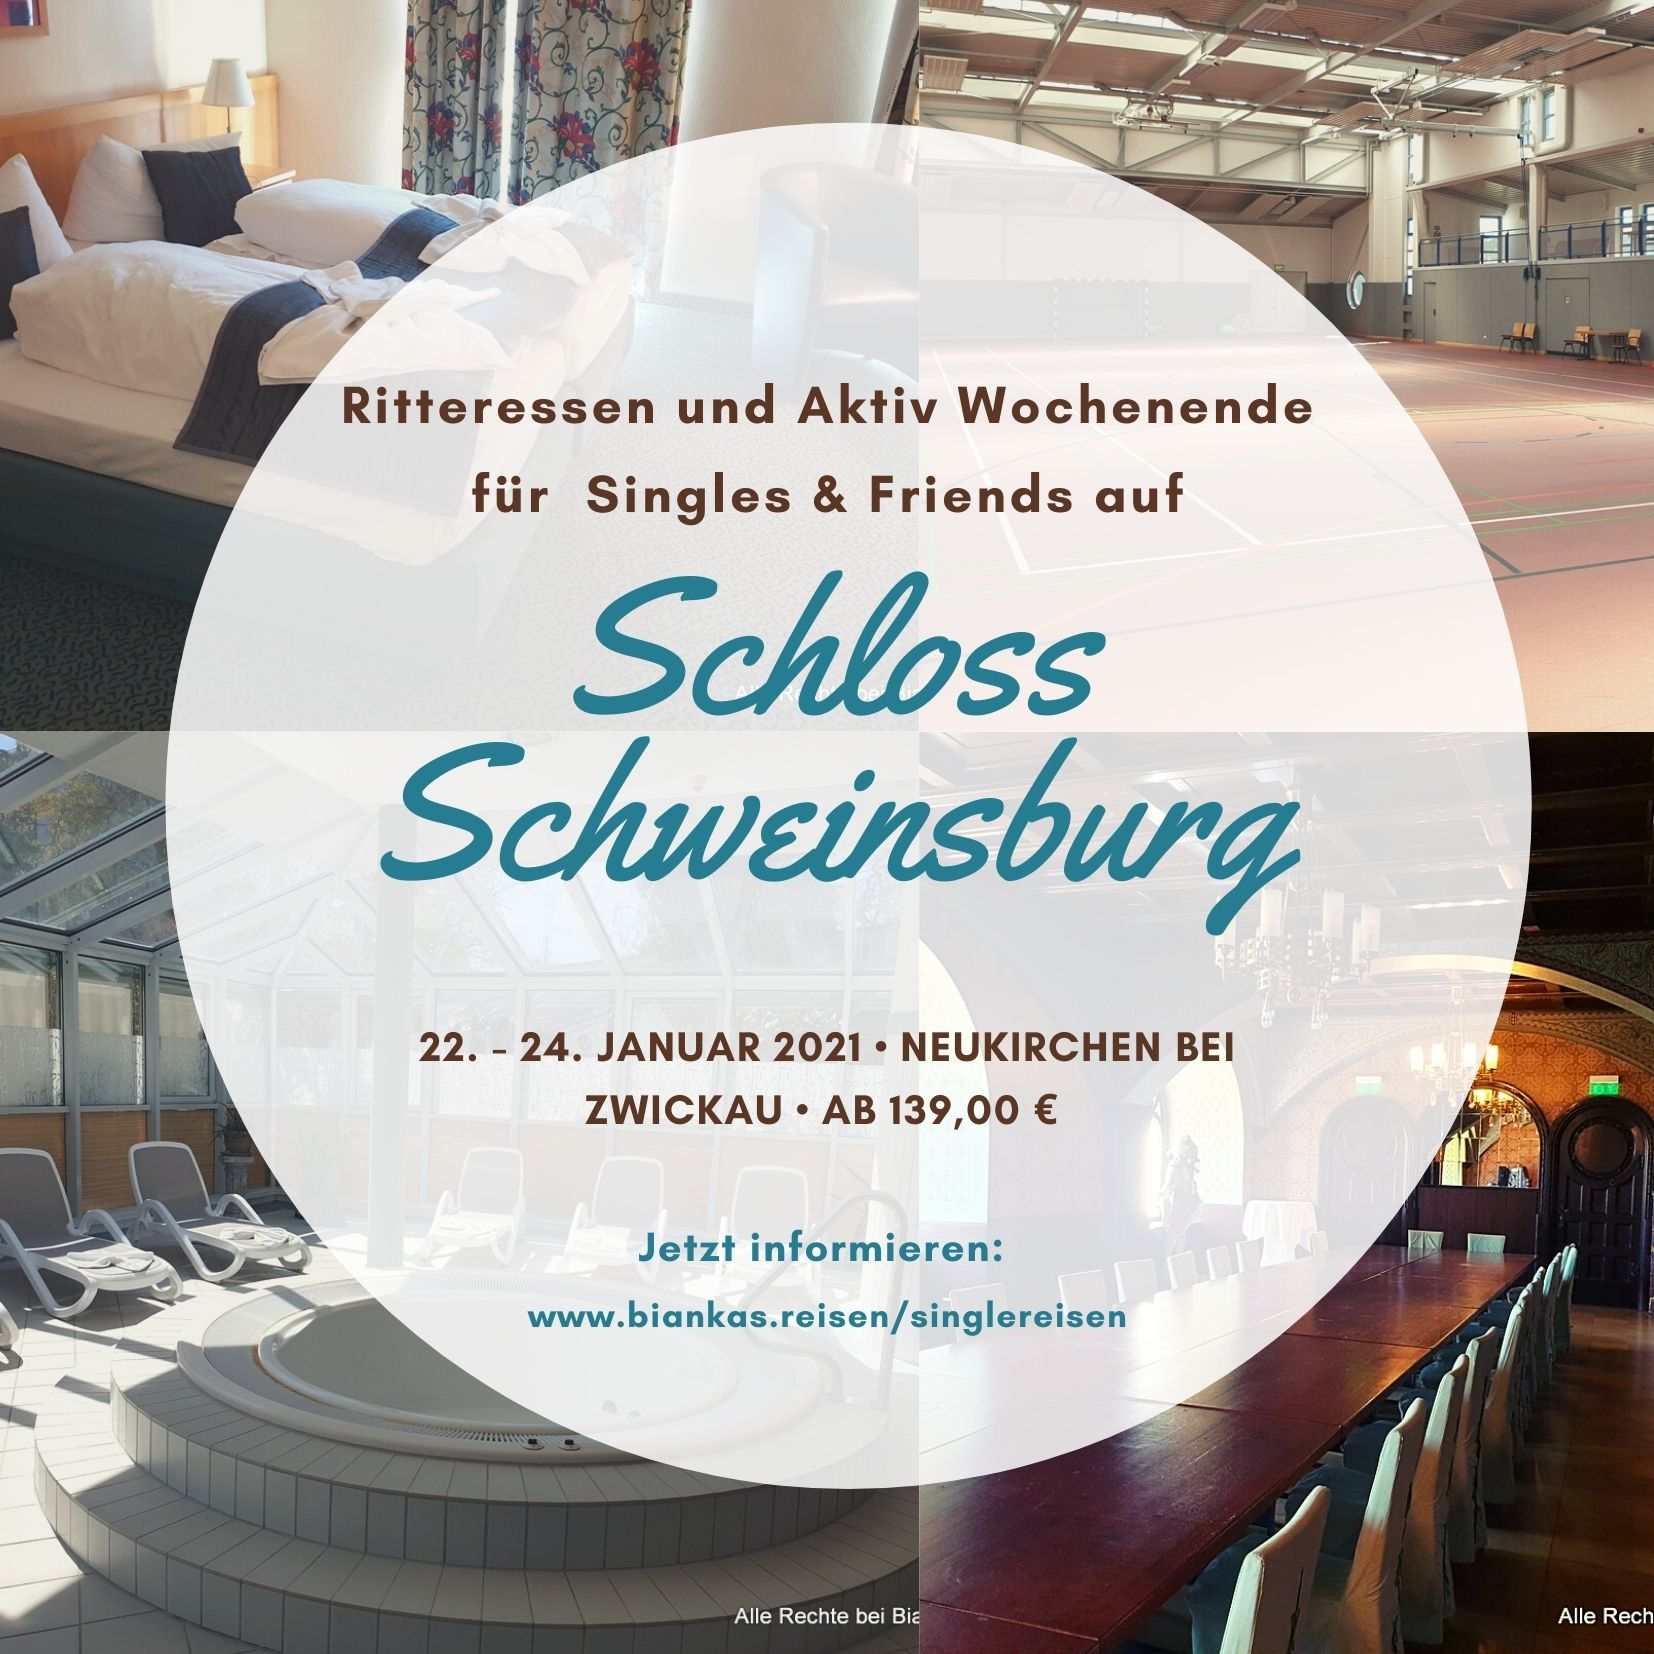 >> Single Weekend Schloss Schweinsburg 